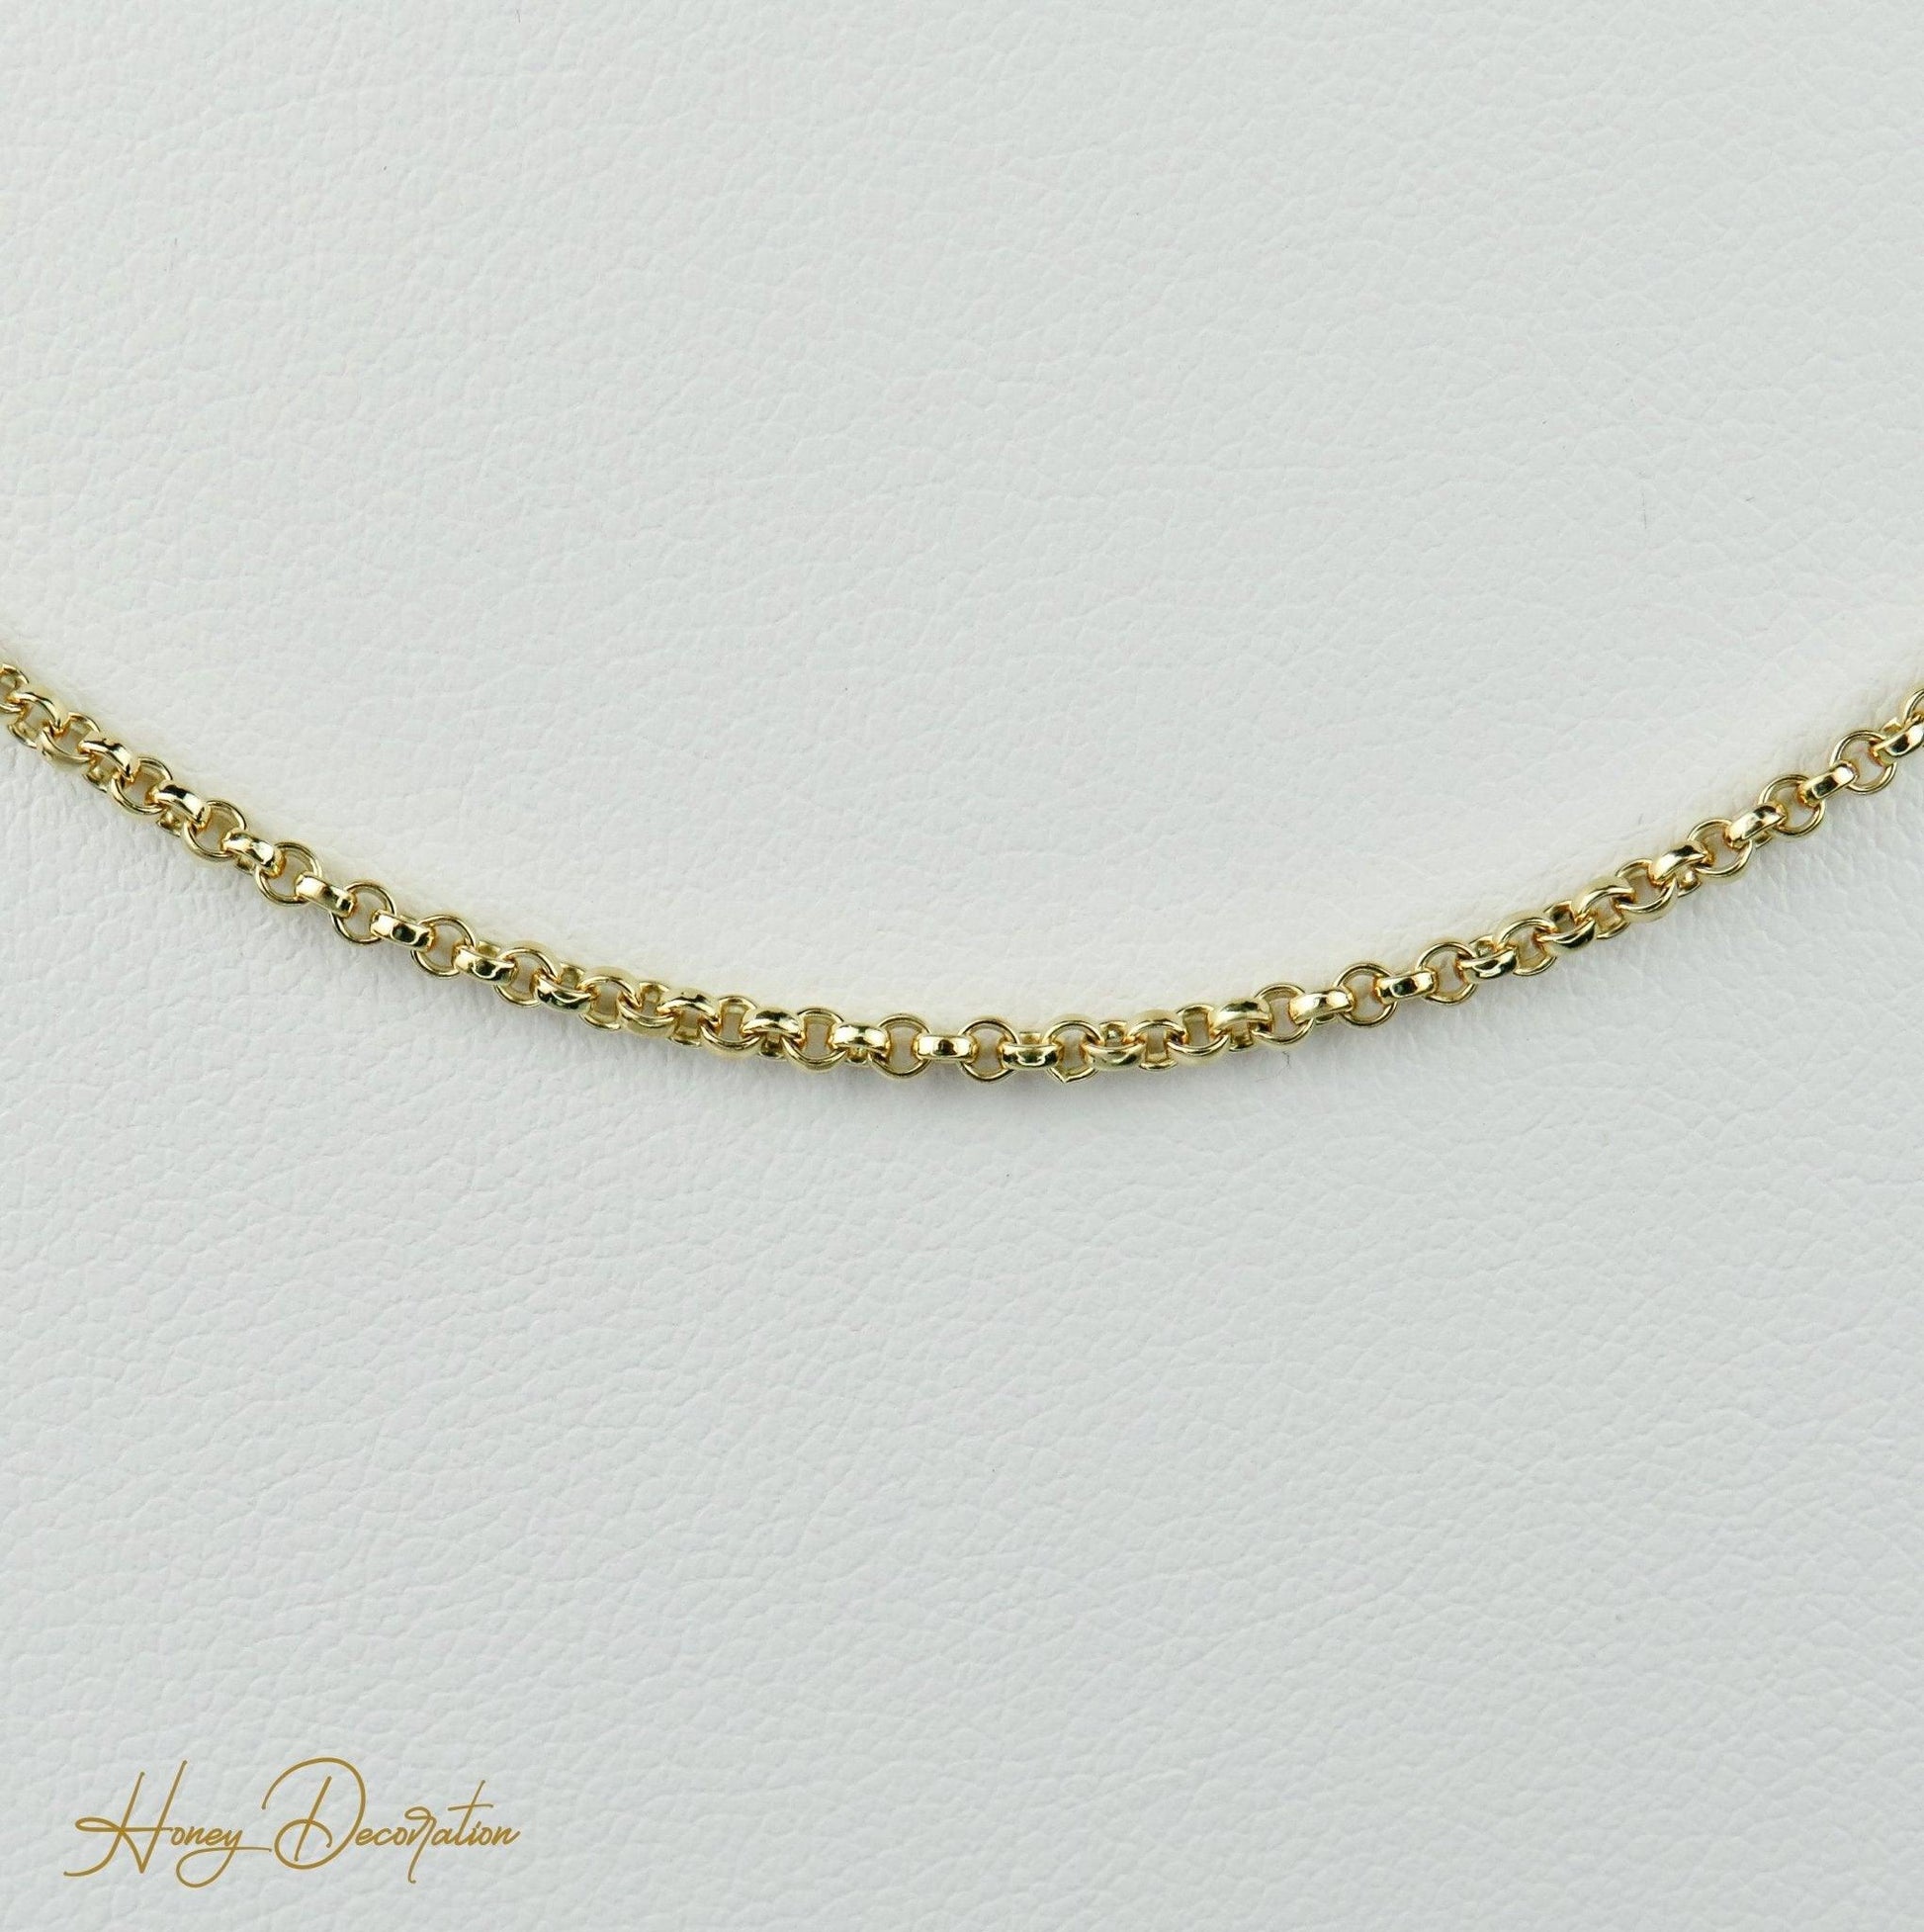 Goldkette aus 14 Karat Gold mit Brillantanhänger - Honey Decoration